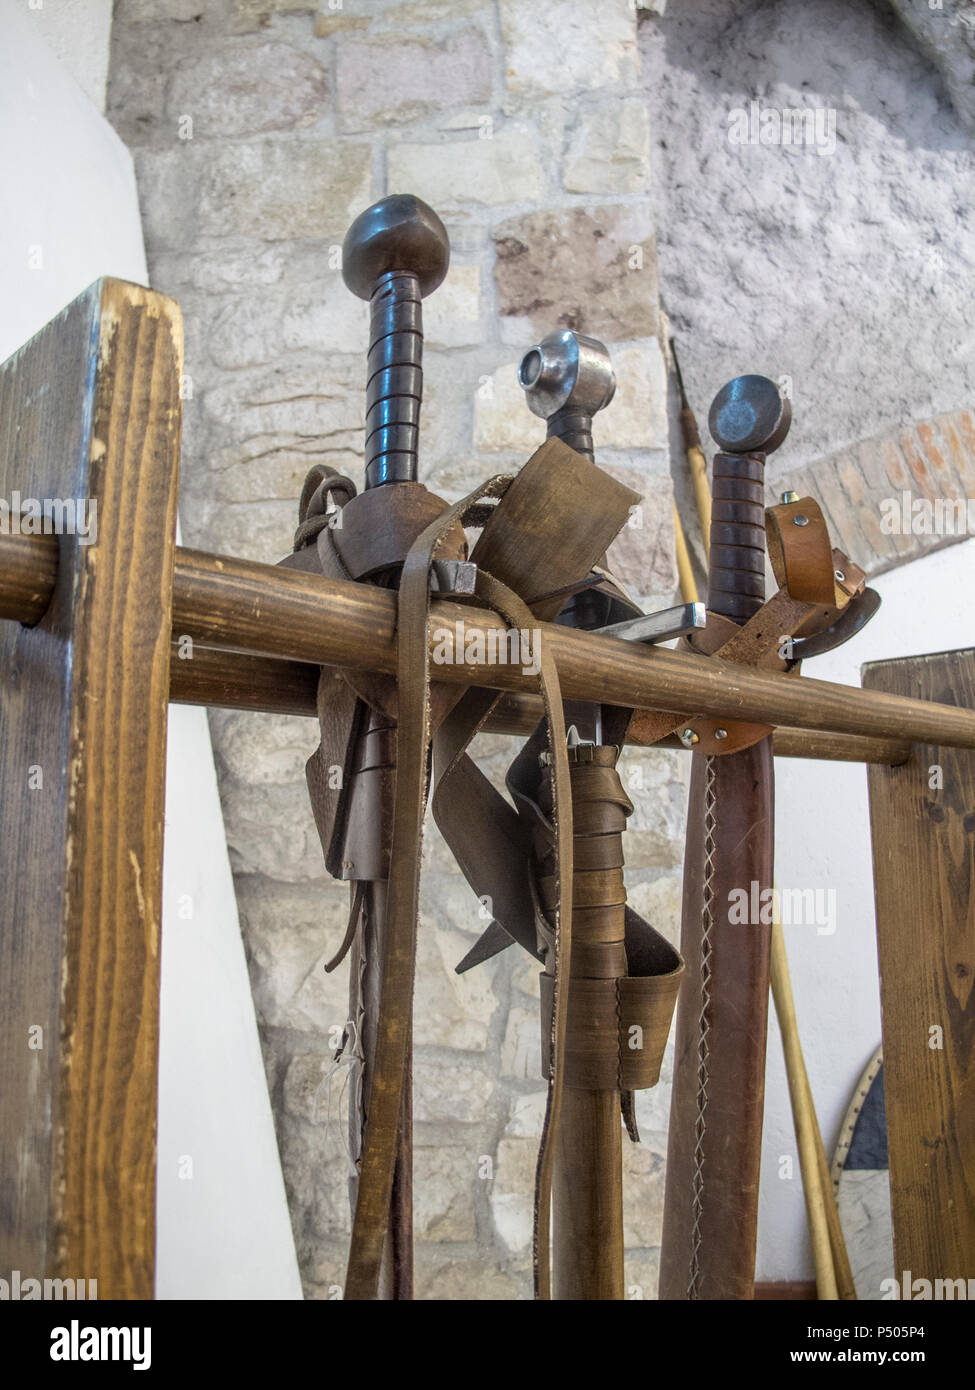 Gubbio, Festival du Moyen Age : reproductions modernes d'armes médiévales : arbalète, casques, épée et dague à lame longue Banque D'Images